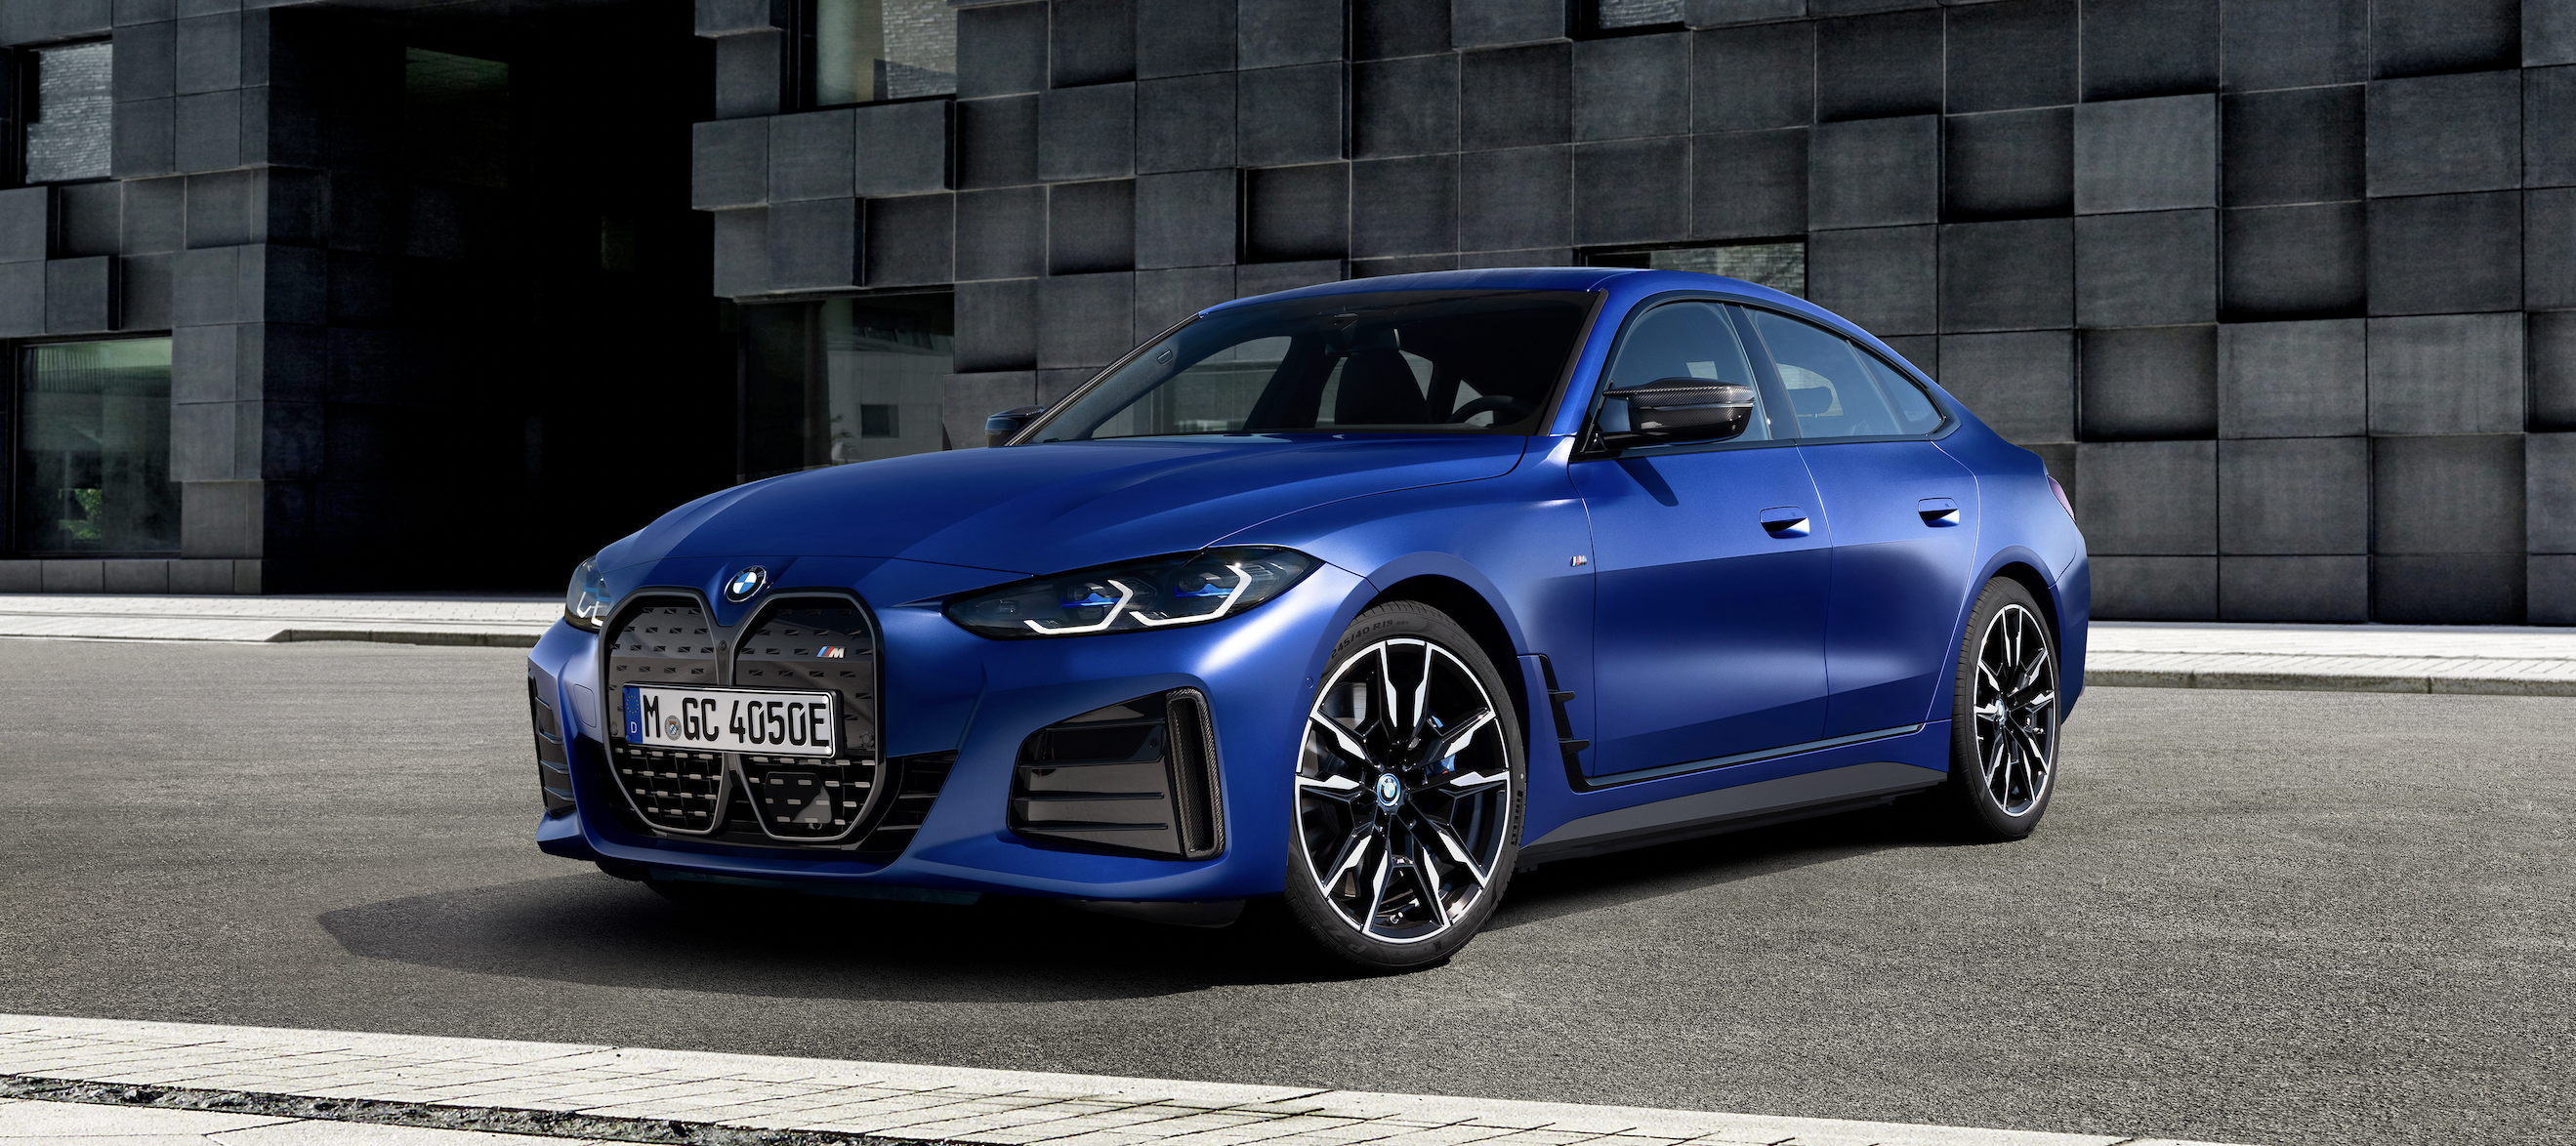 BMW do roku 2025 uvede na trh šest vozů na elektrický pohon 